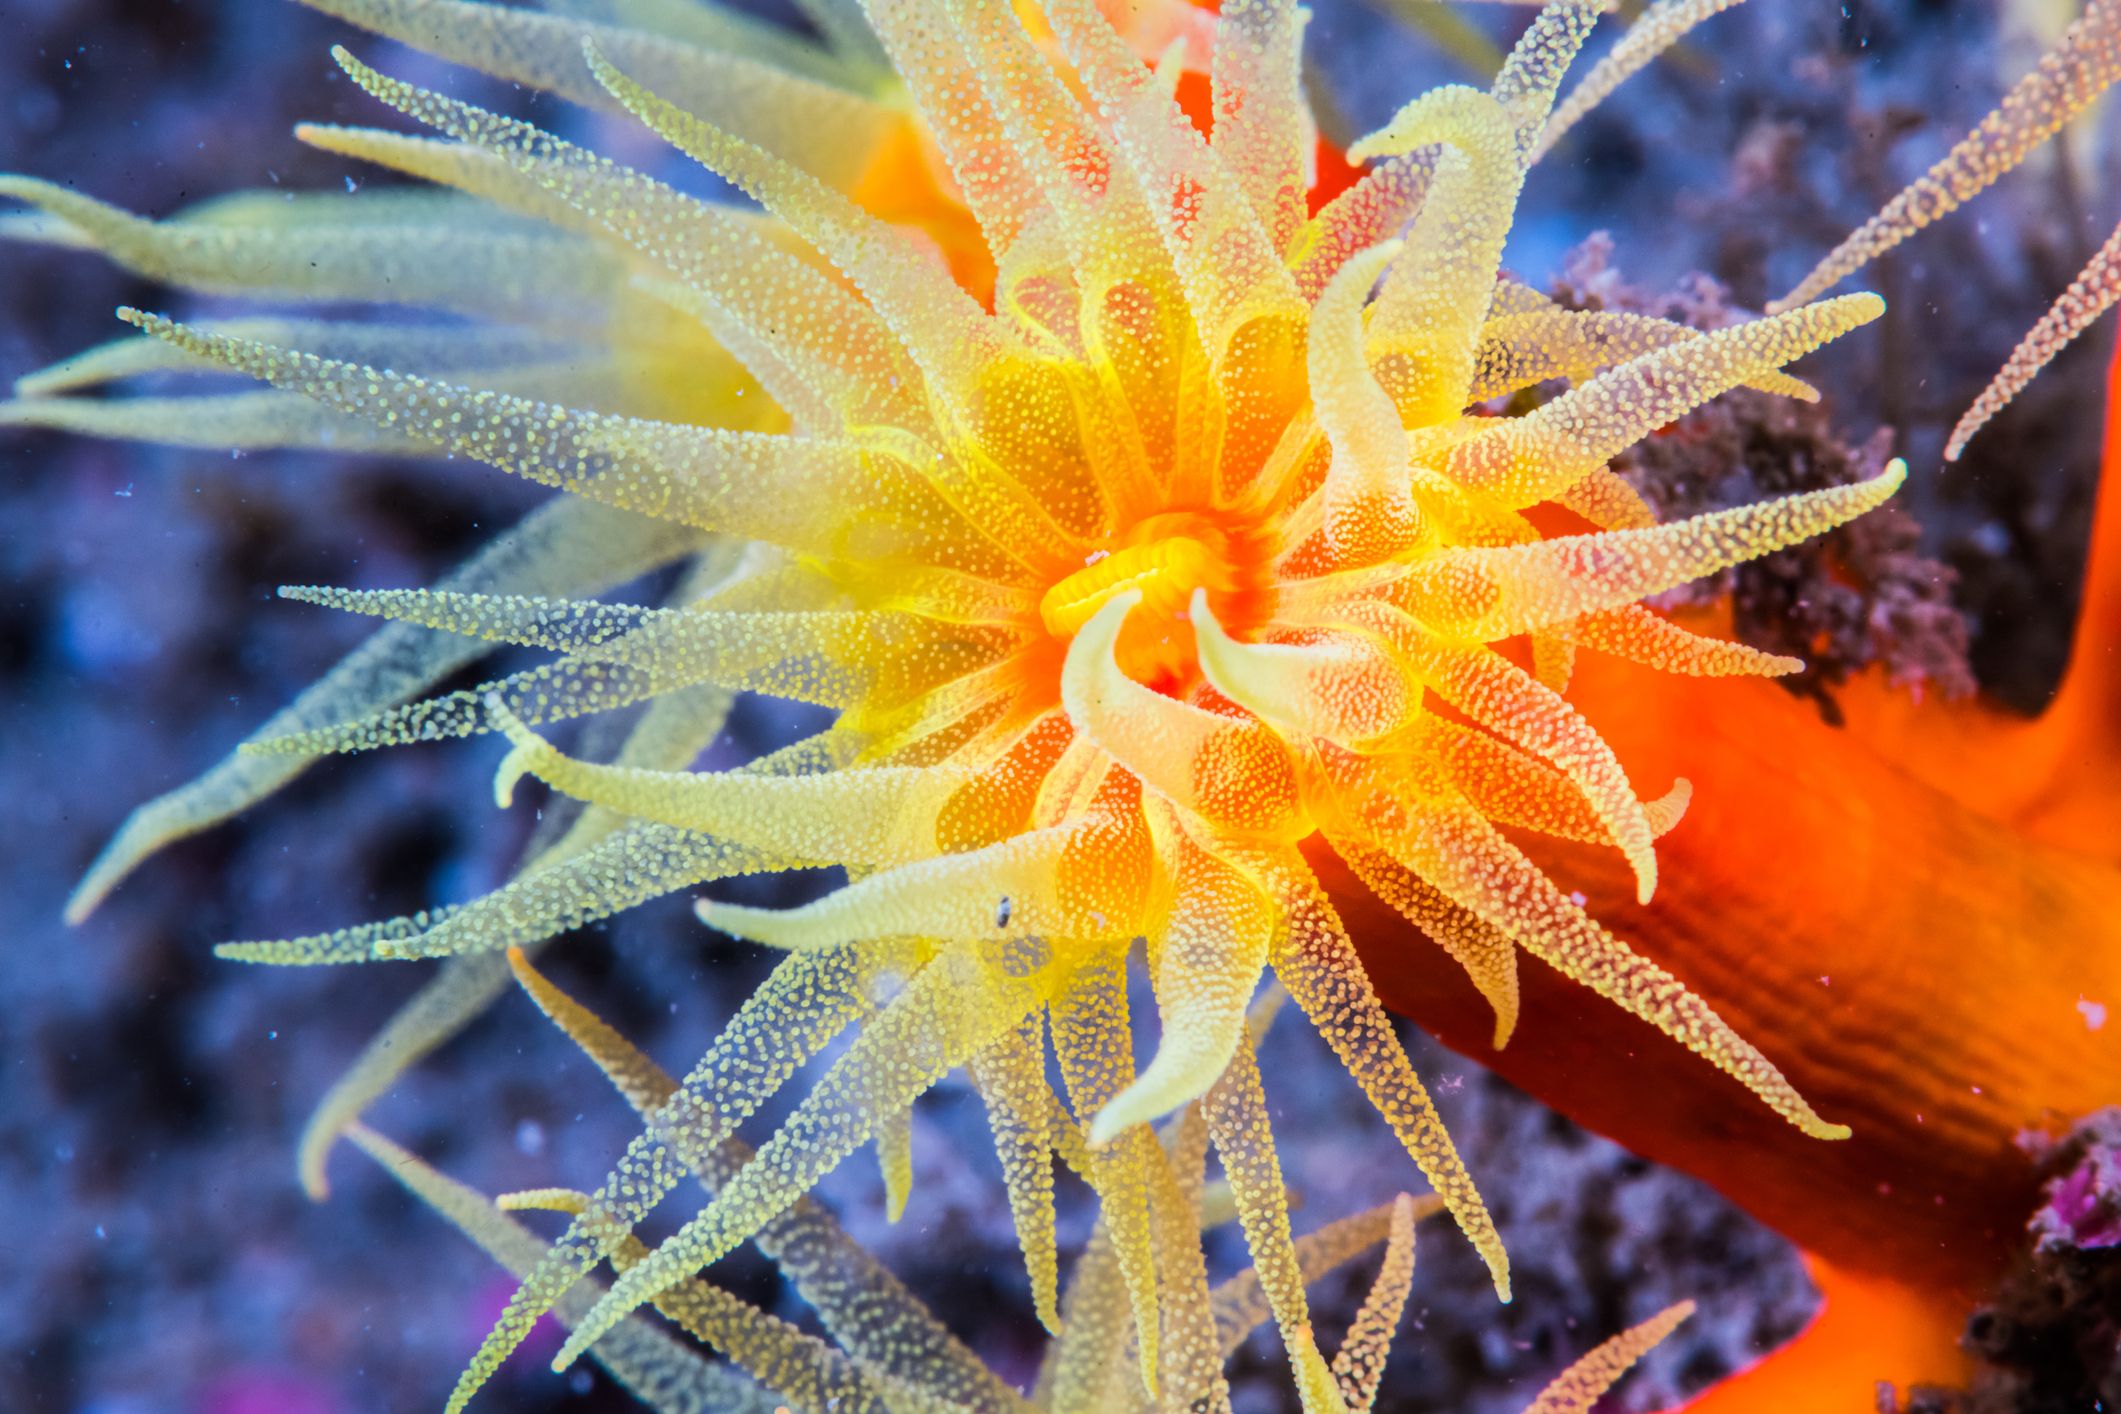 underwater ocean life photography